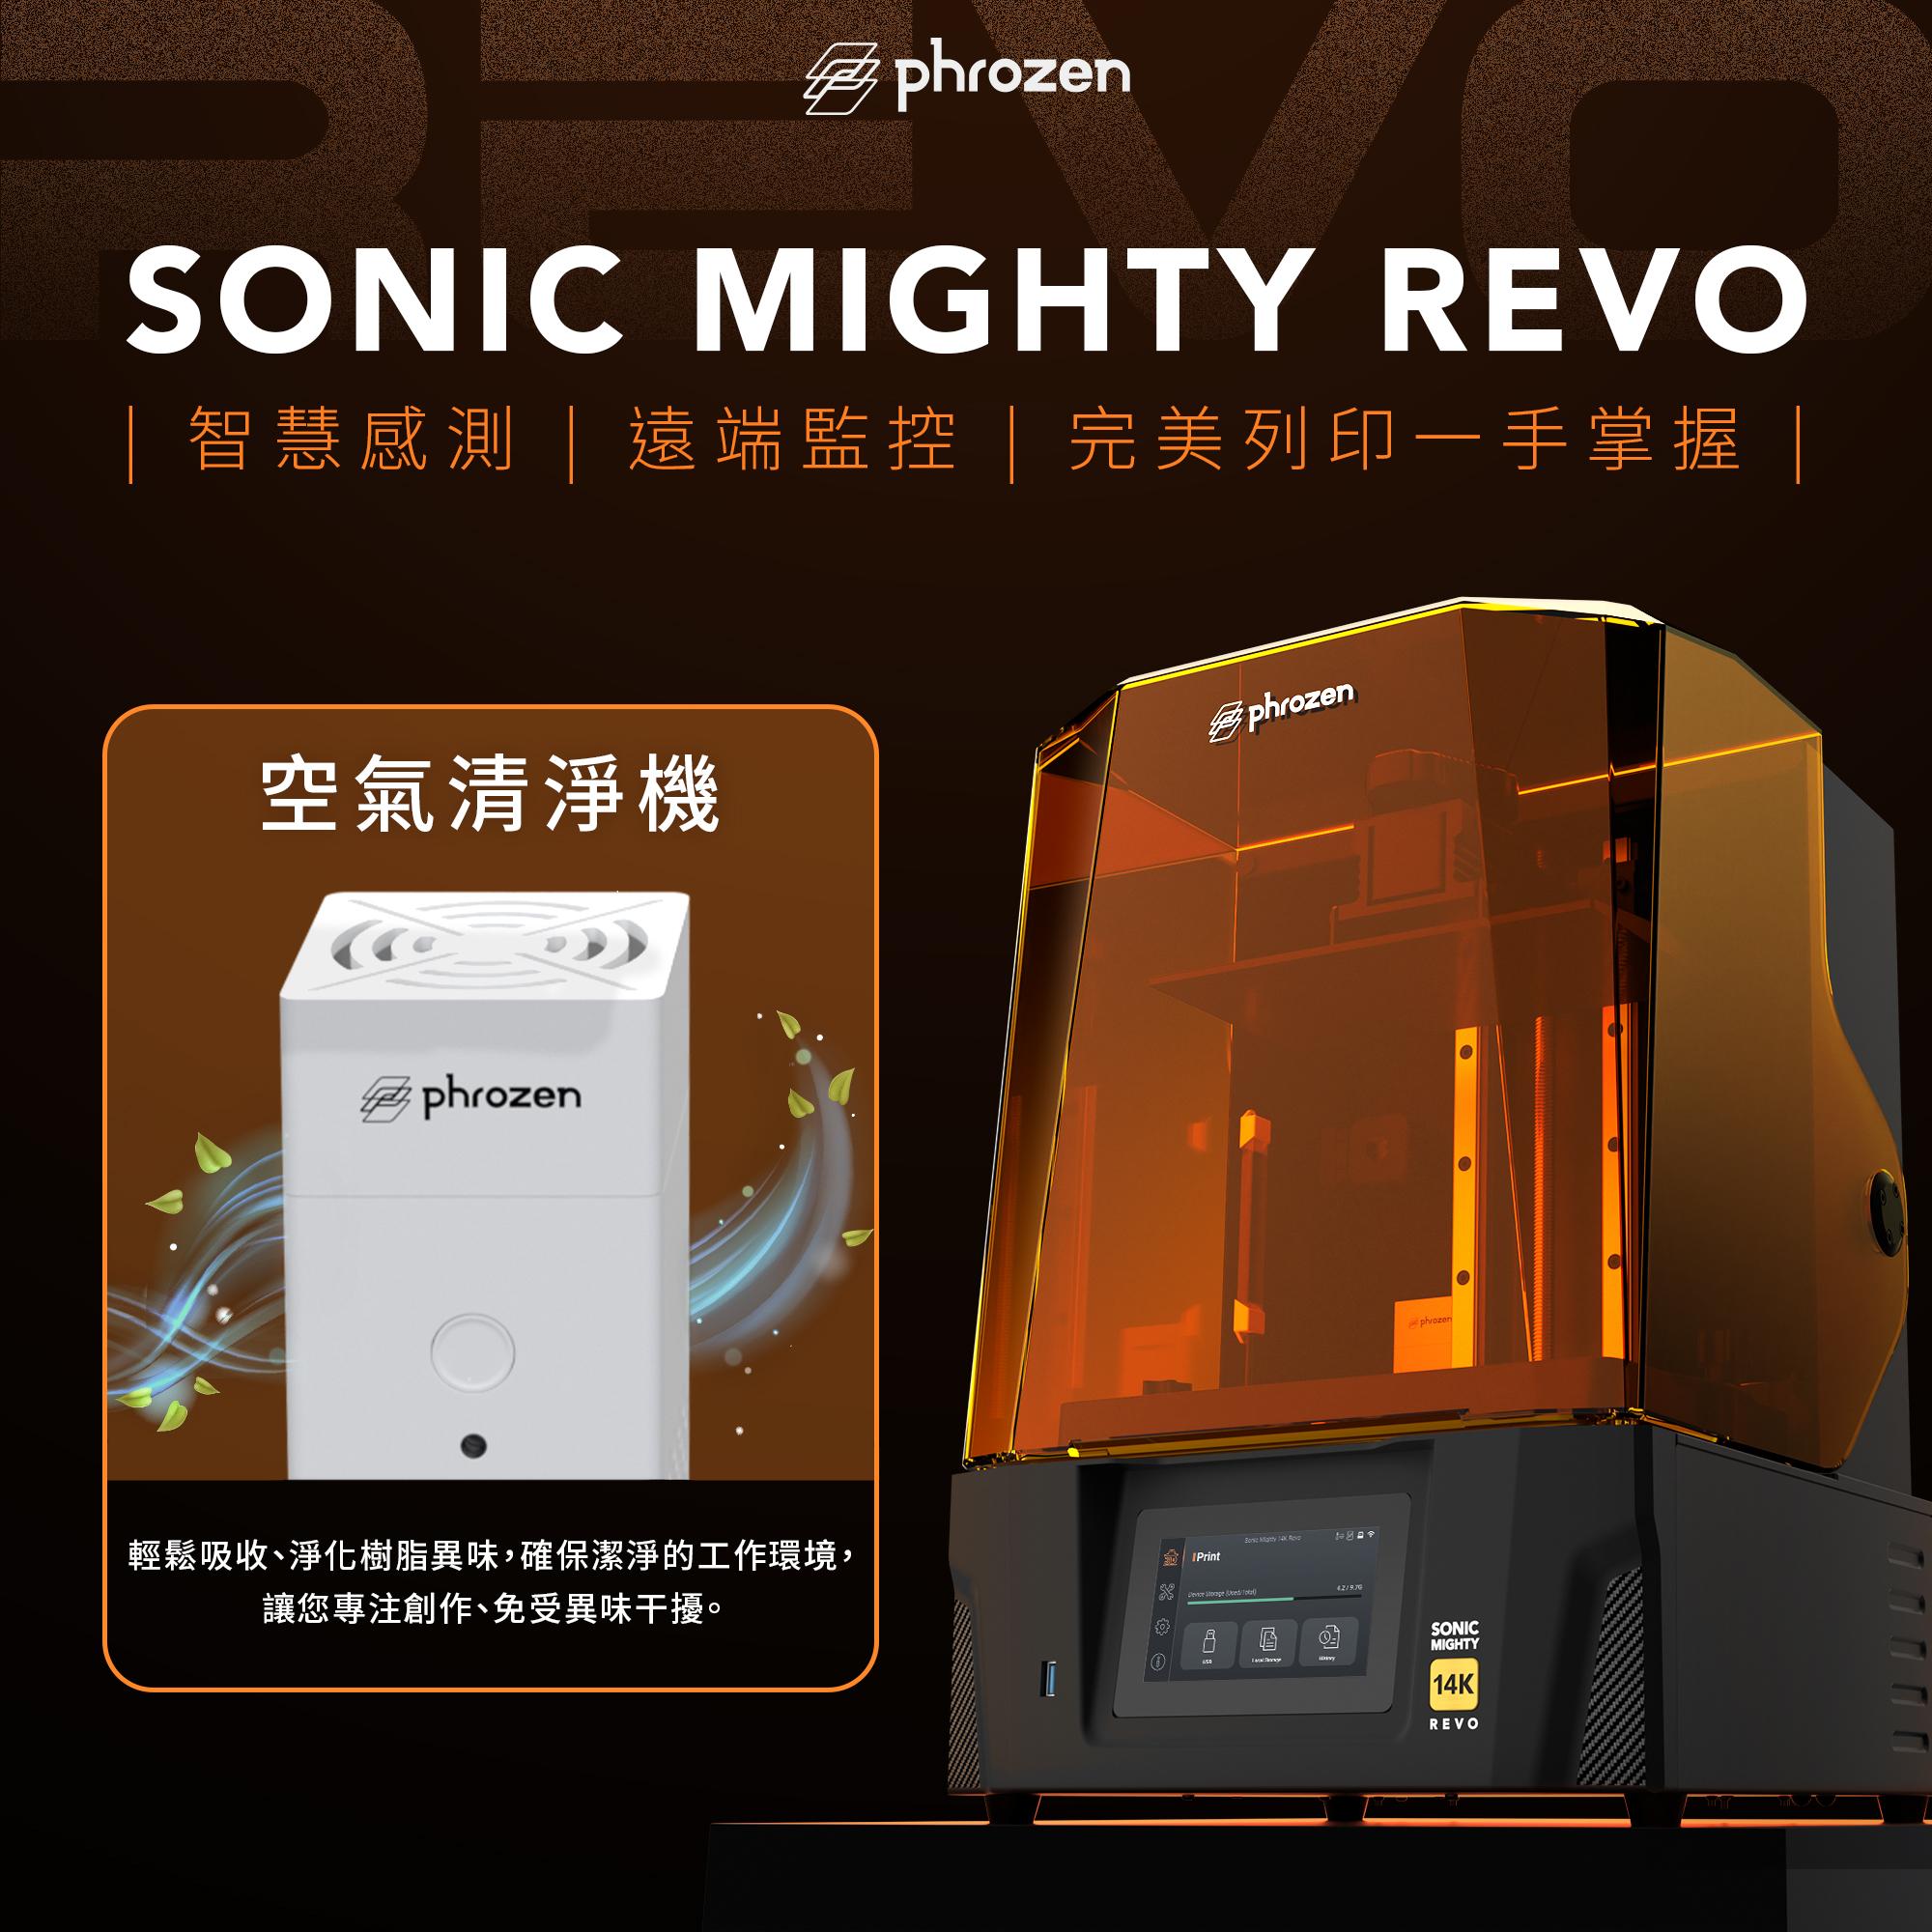 【REVO】Sonic Mighty Revo 高CP值組合，機器+送1瓶樹脂(隨機)